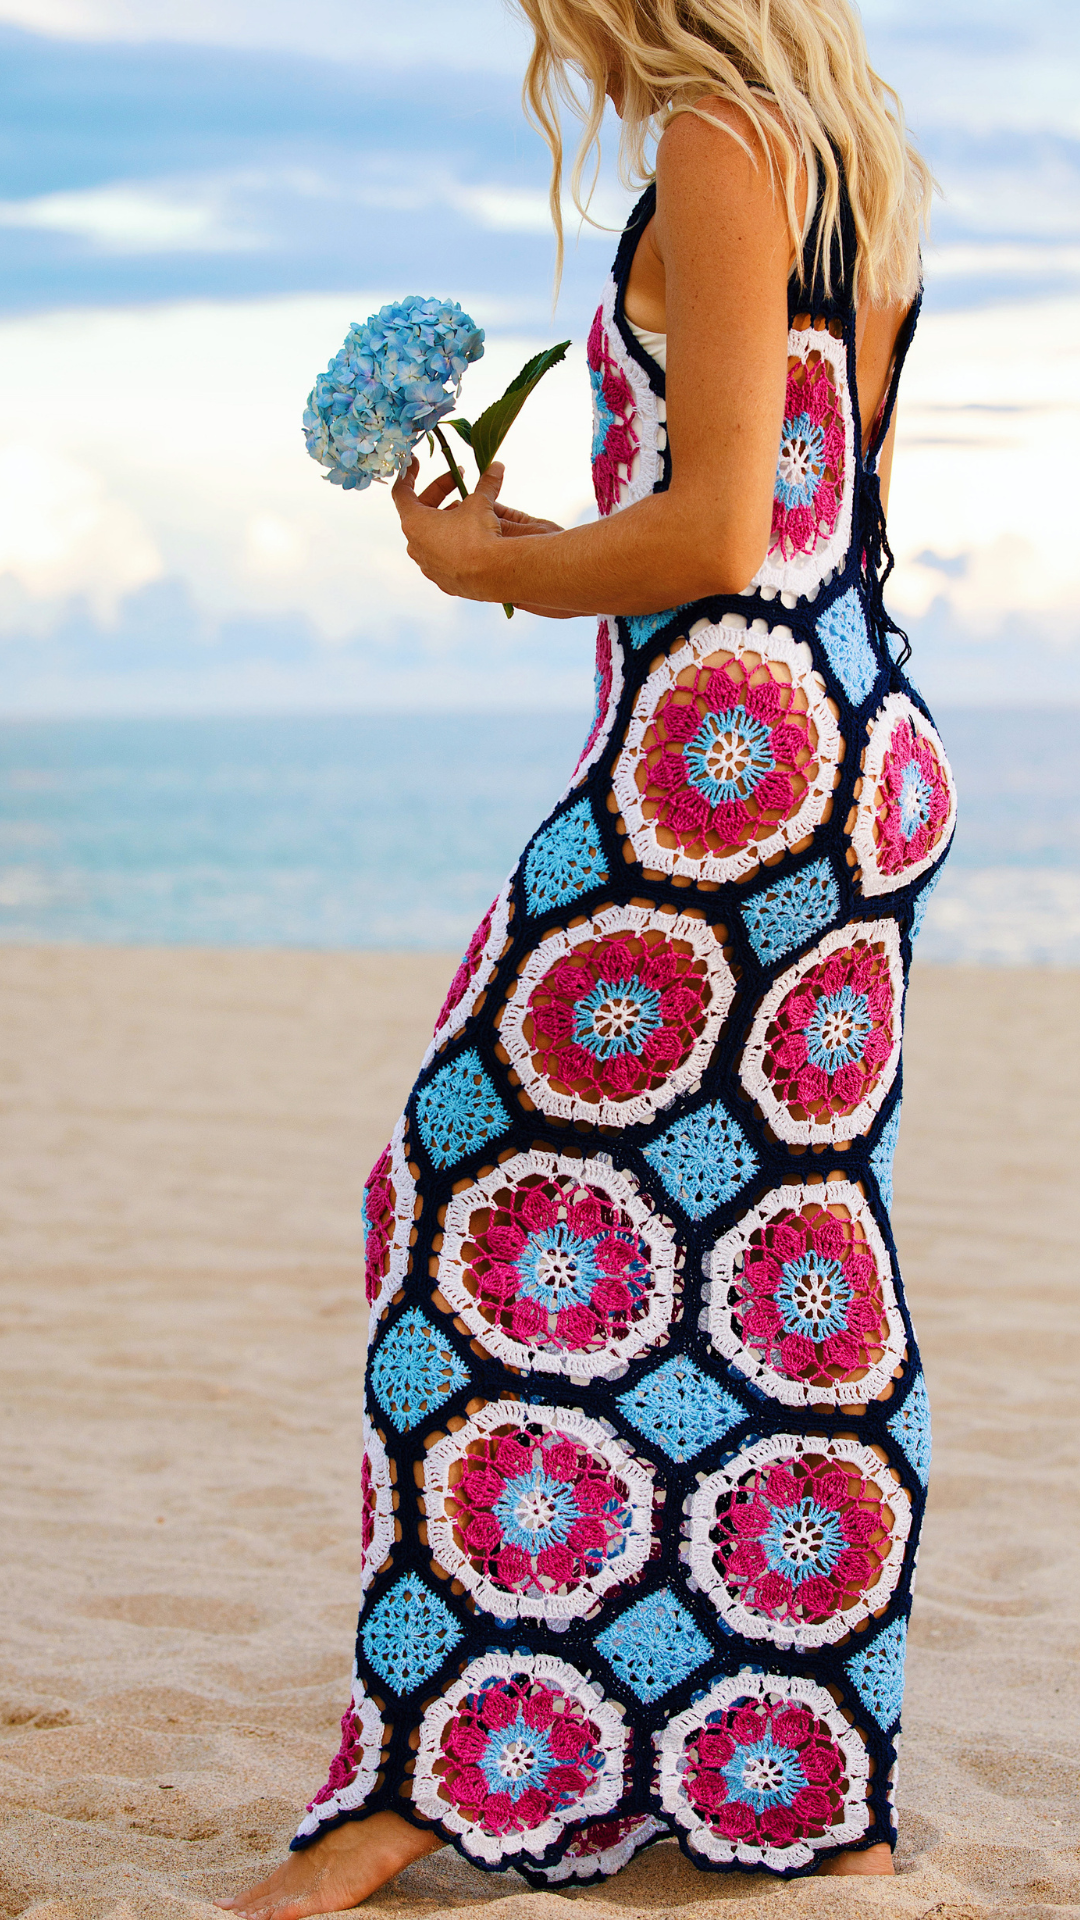 CROCHET PATTERN - Dahlia Dress Crochet Pattern